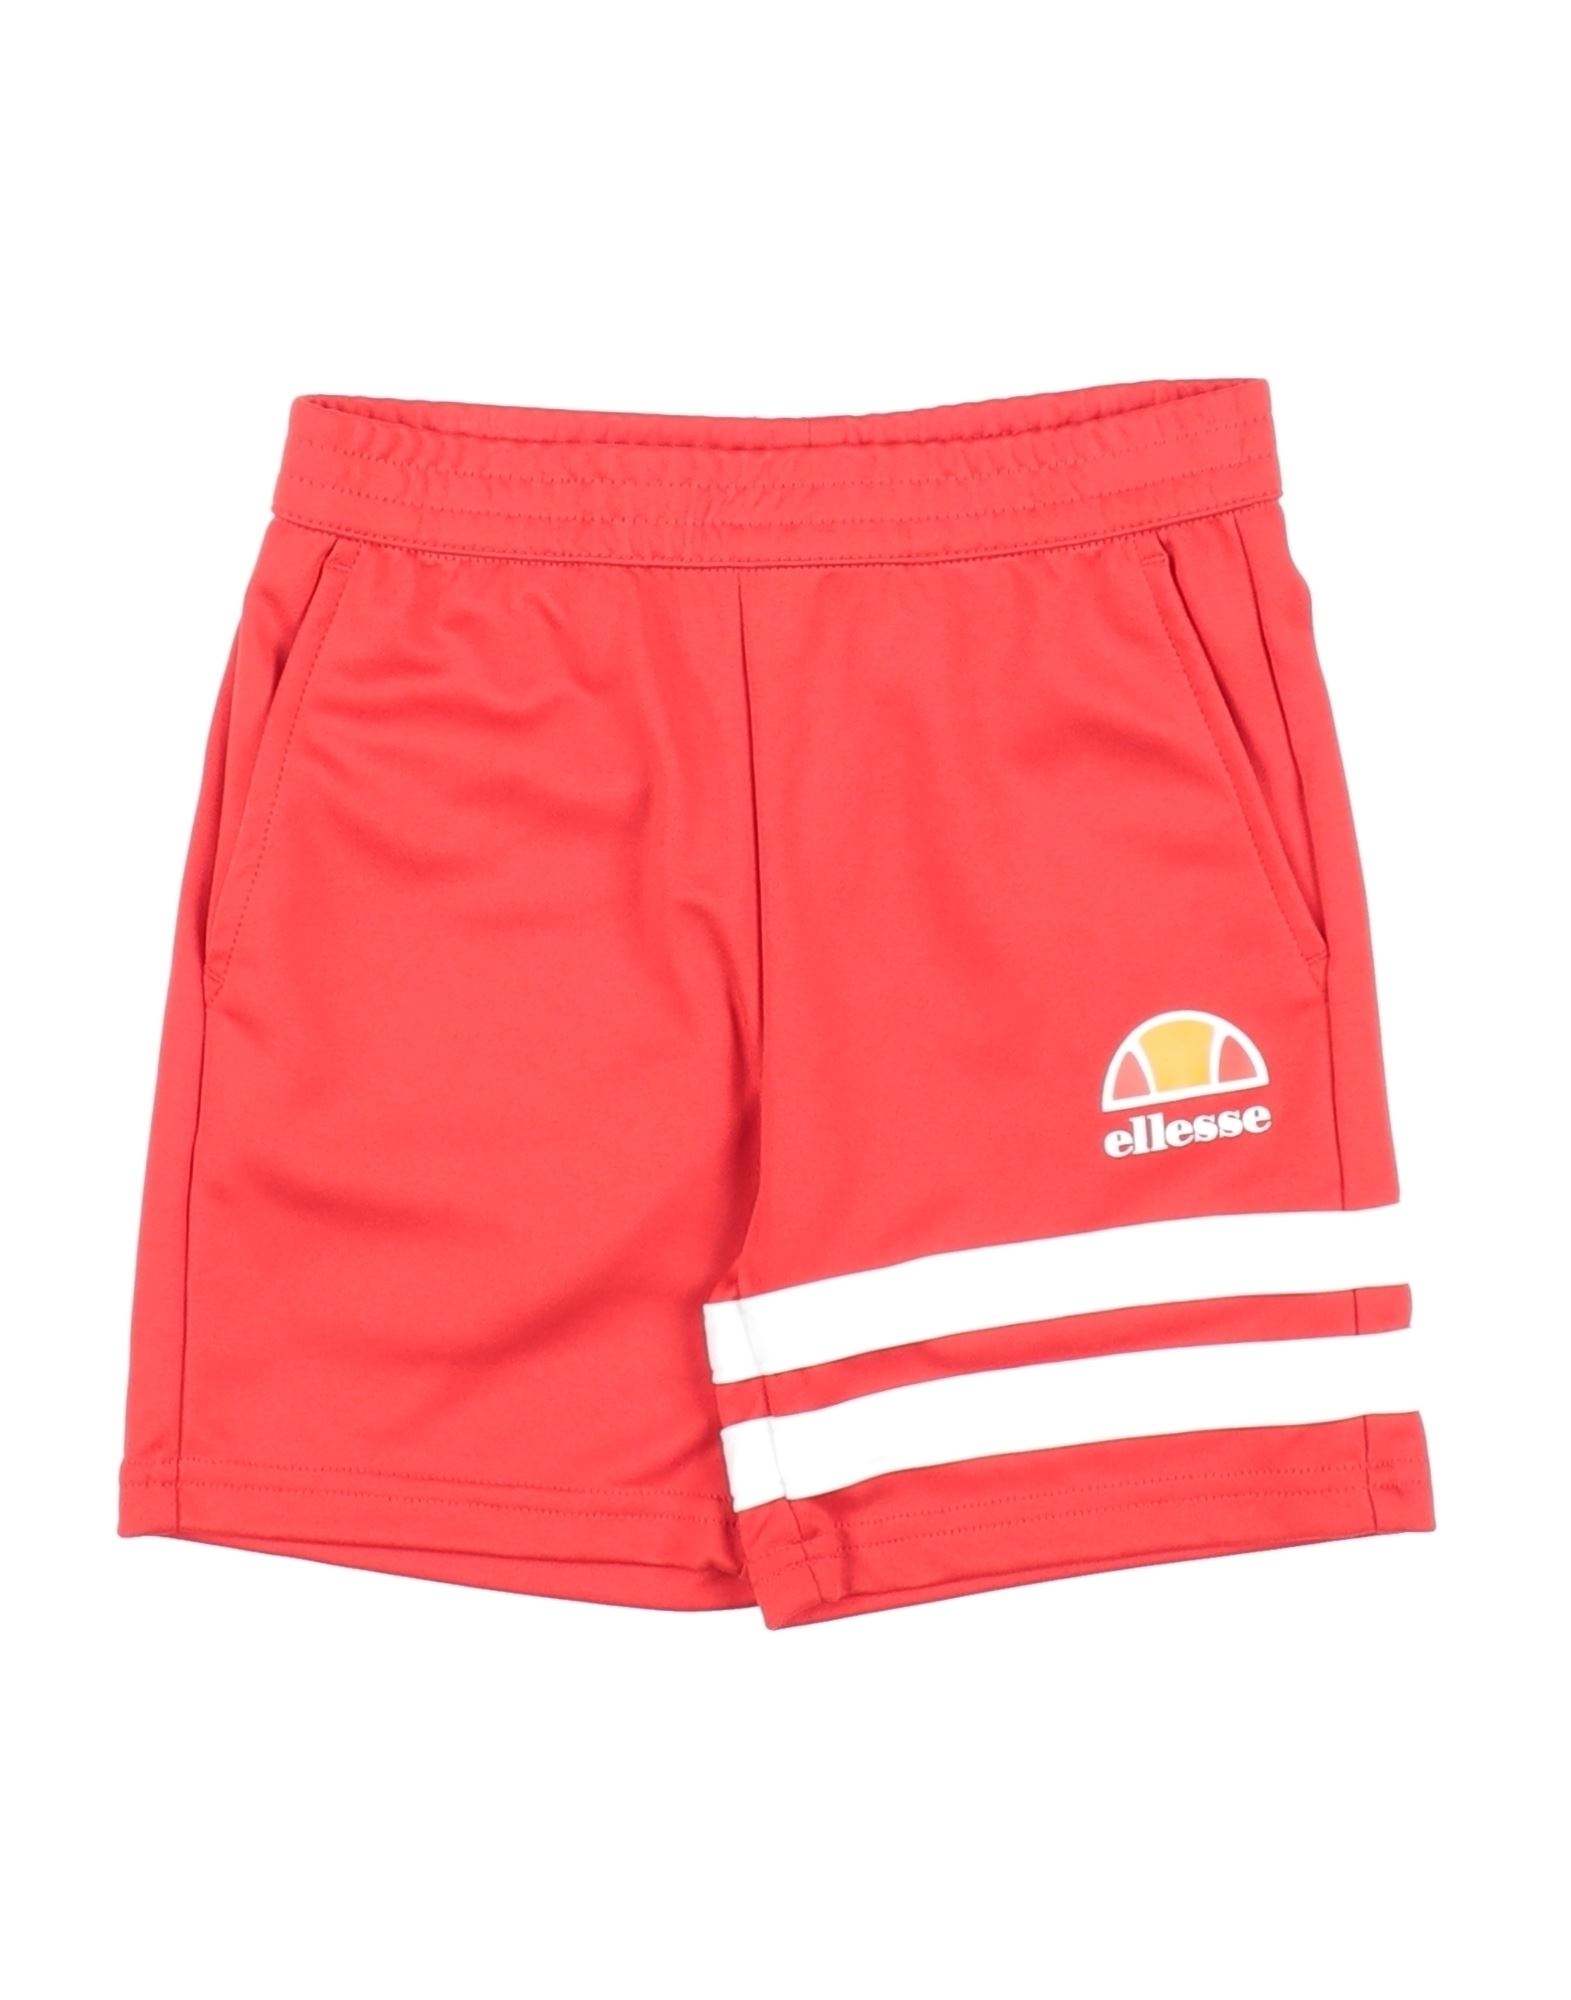 Ellesse Kids'  Toddler Boy Shorts & Bermuda Shorts Red Size 4 Polyester